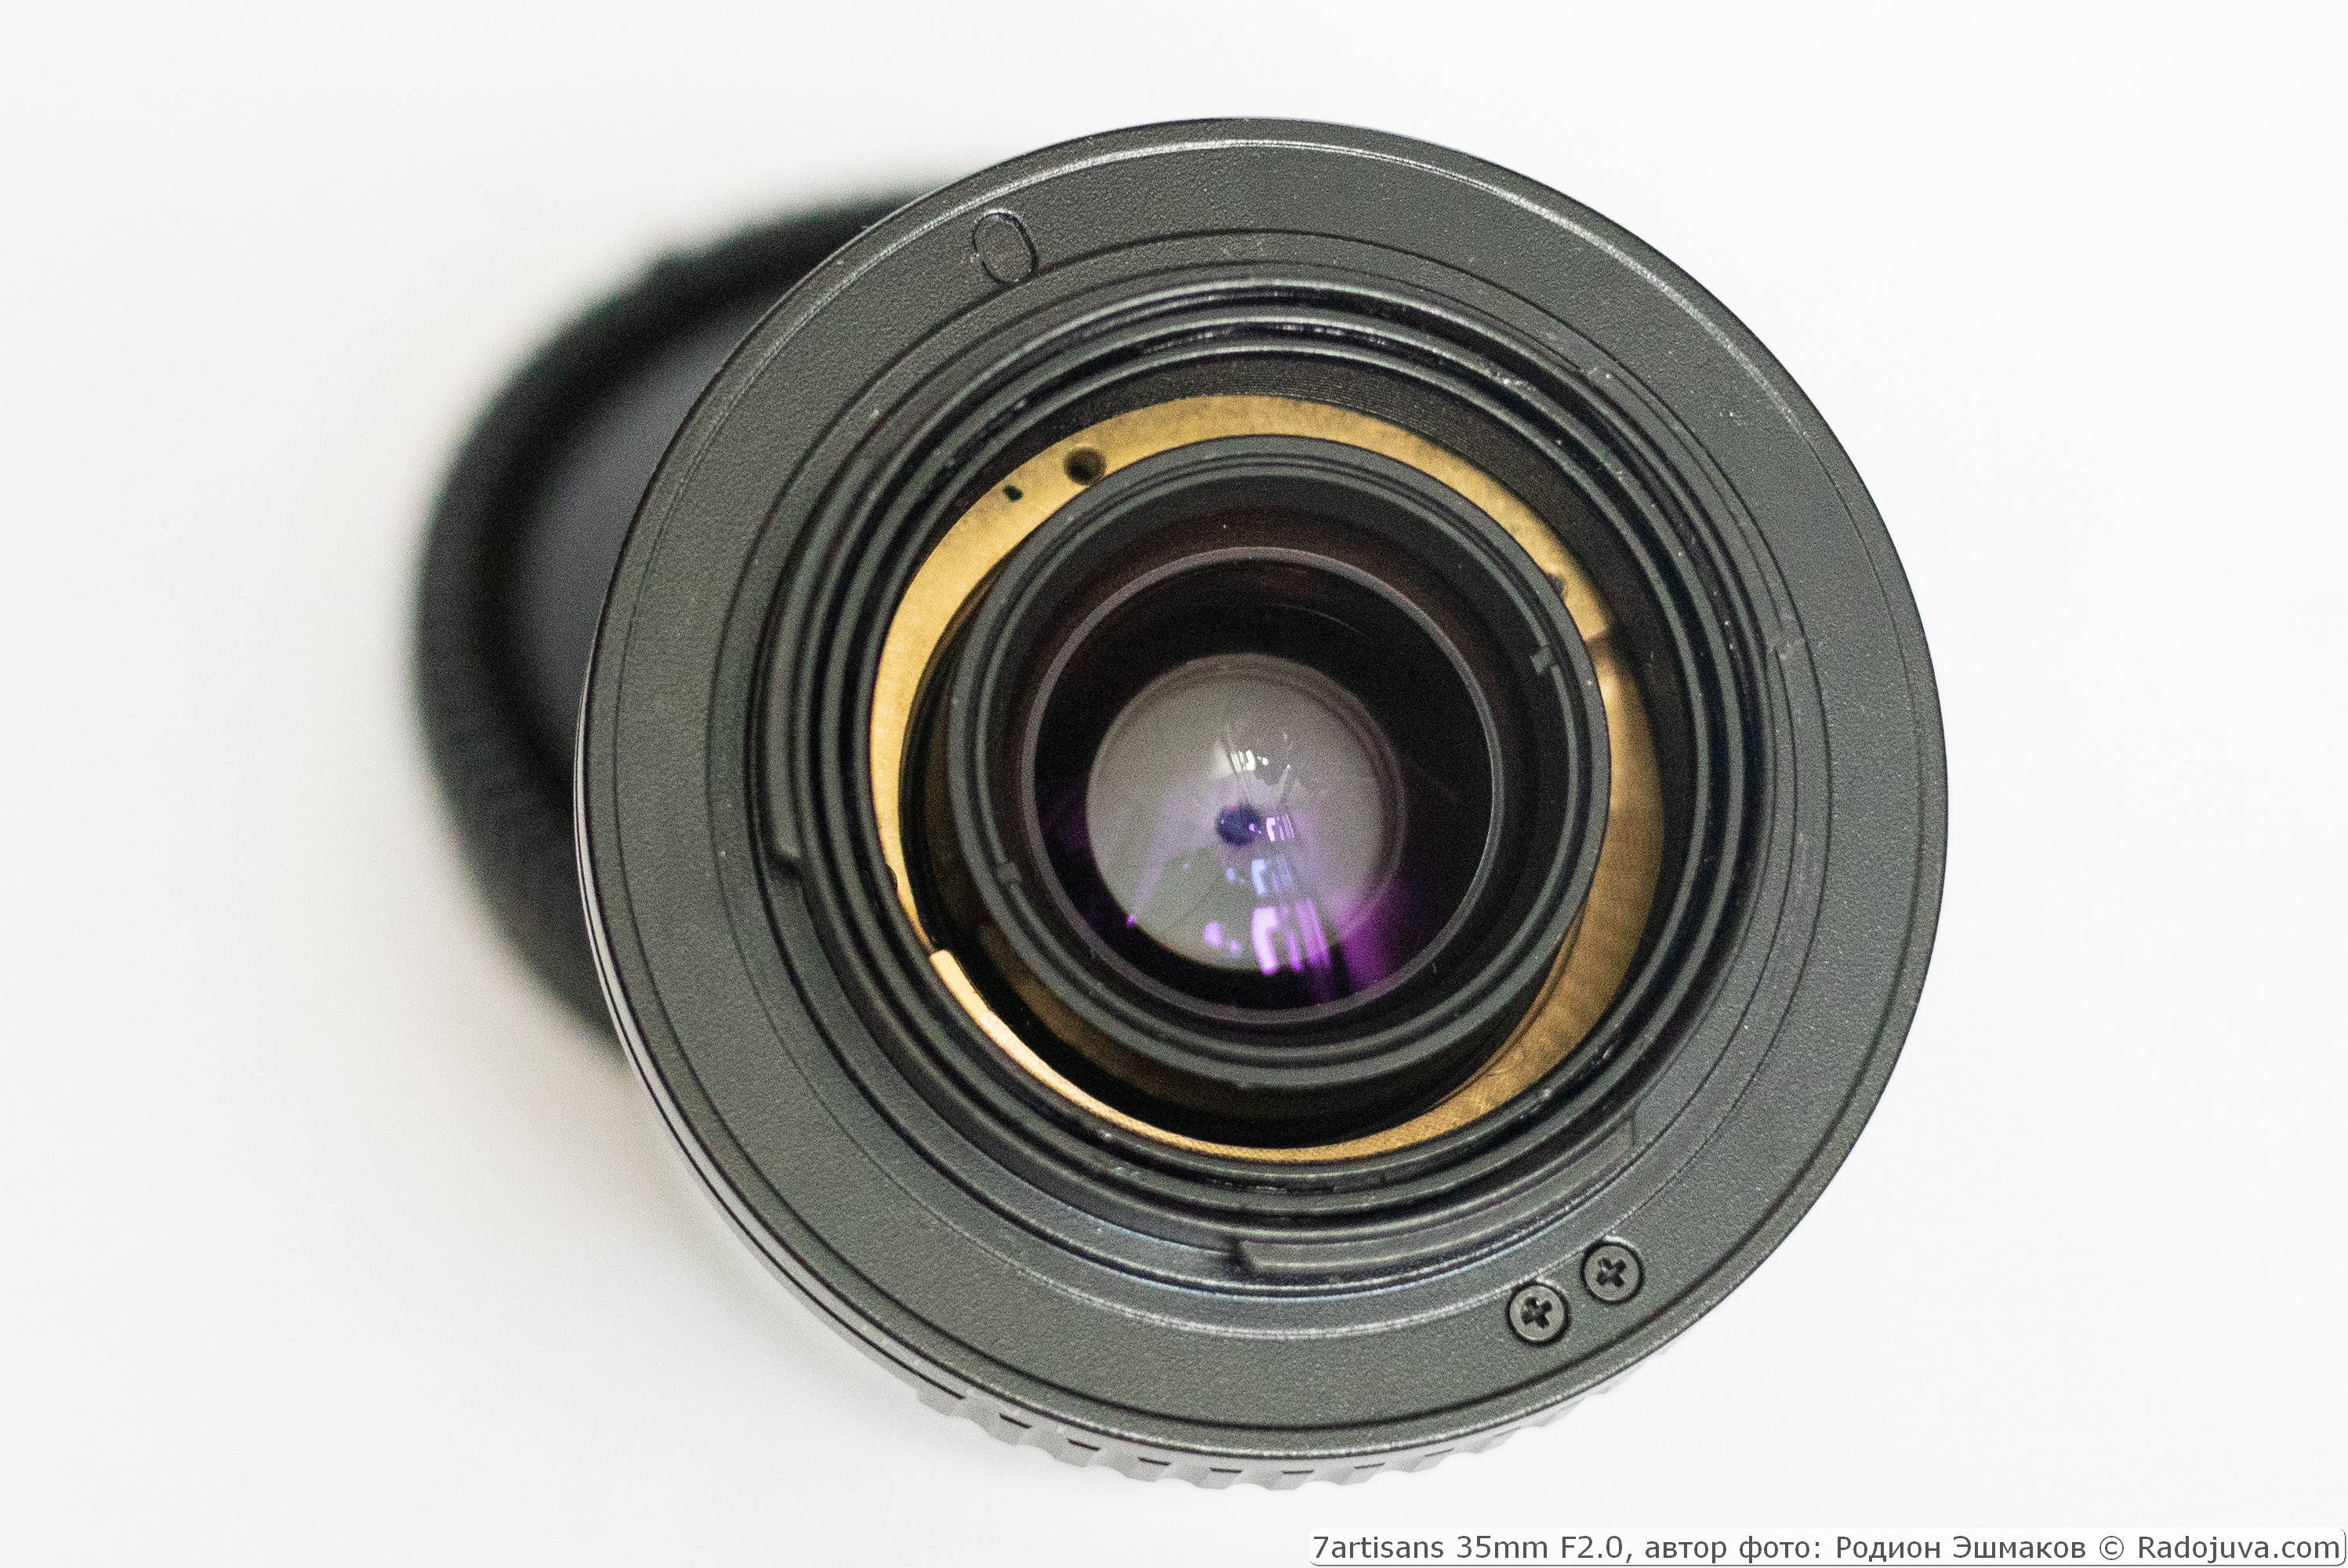 Vanaf de zijkant van de achterste lens van de lens kun je de koperen duwer van de afstandsmeter zien. De lens is uitgerust met een Leica M-NEX helicoid-adapter.